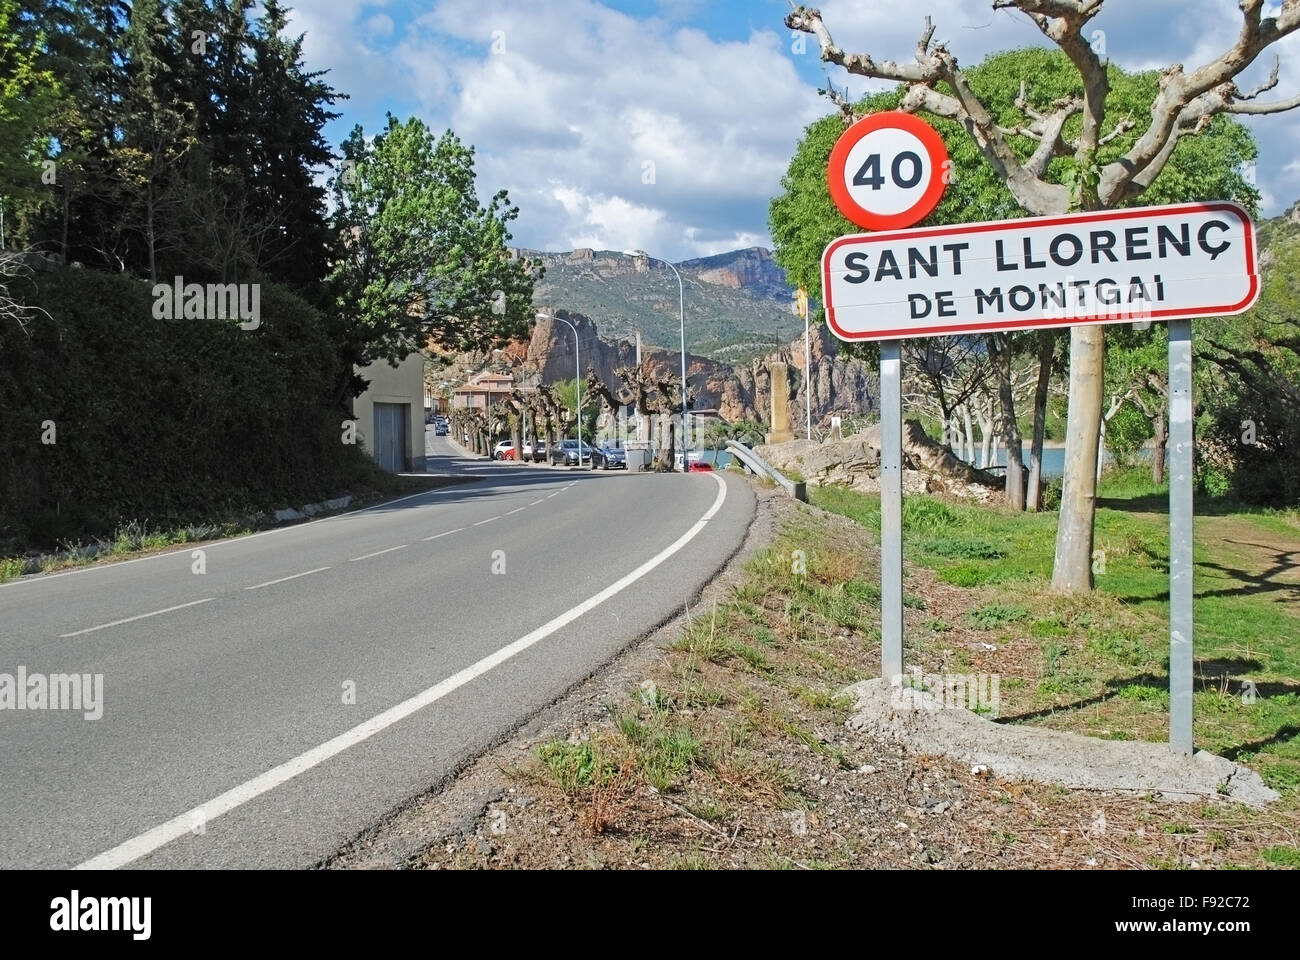 Sant Llorenç de Montgai village sign in Catalonia, Spain. Stock Photo